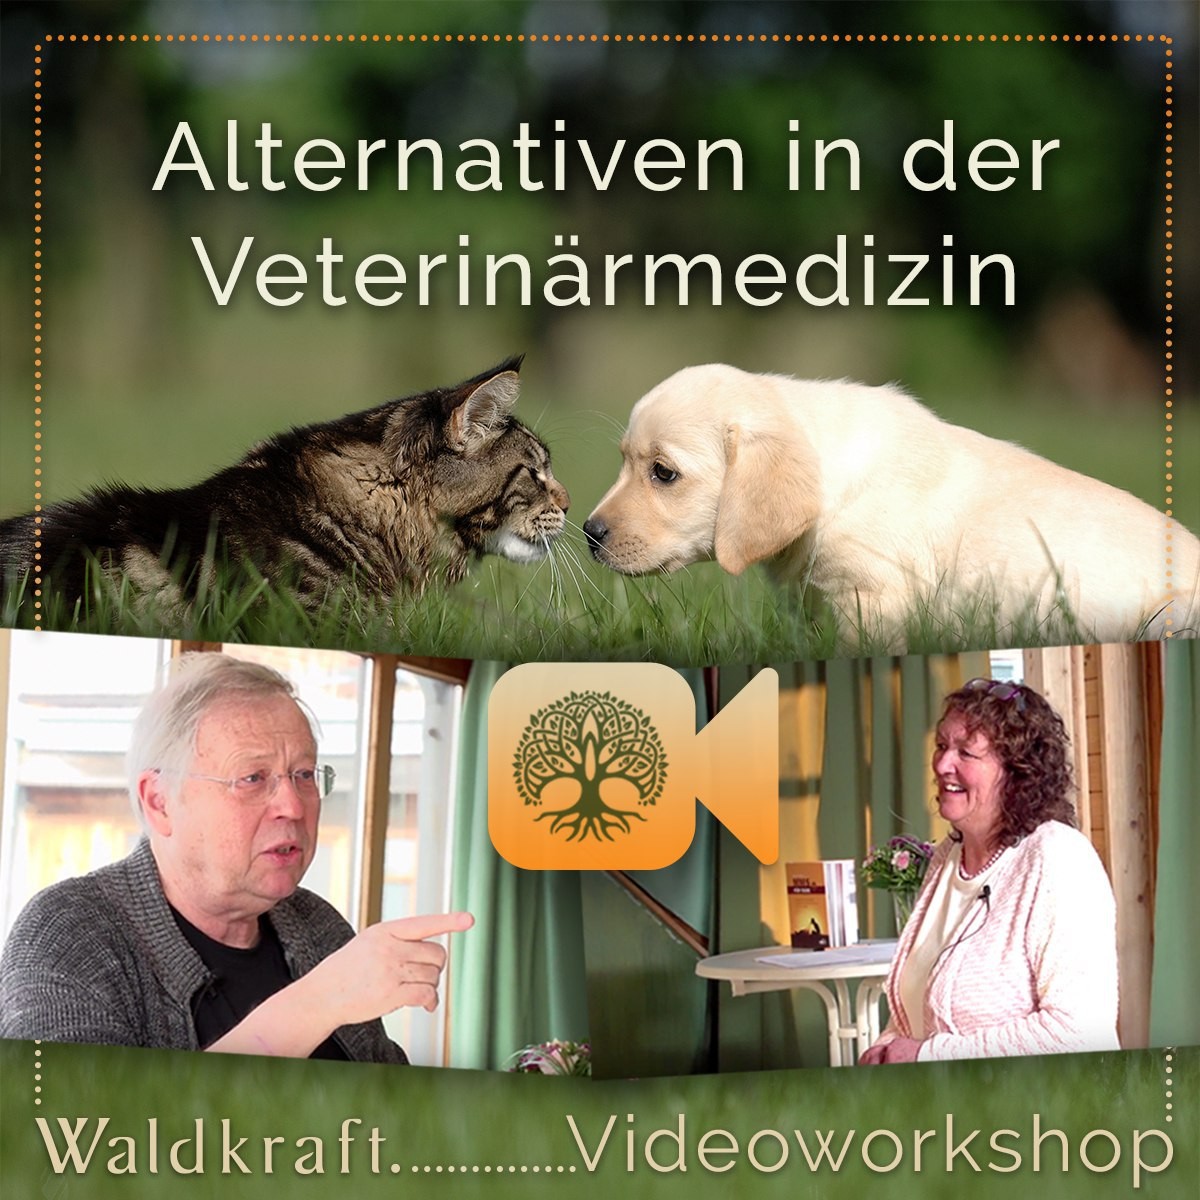 Video-Workshop "Alternativen in der Veterinärmedizin" Dirk Schrader / Monika Rekelhof